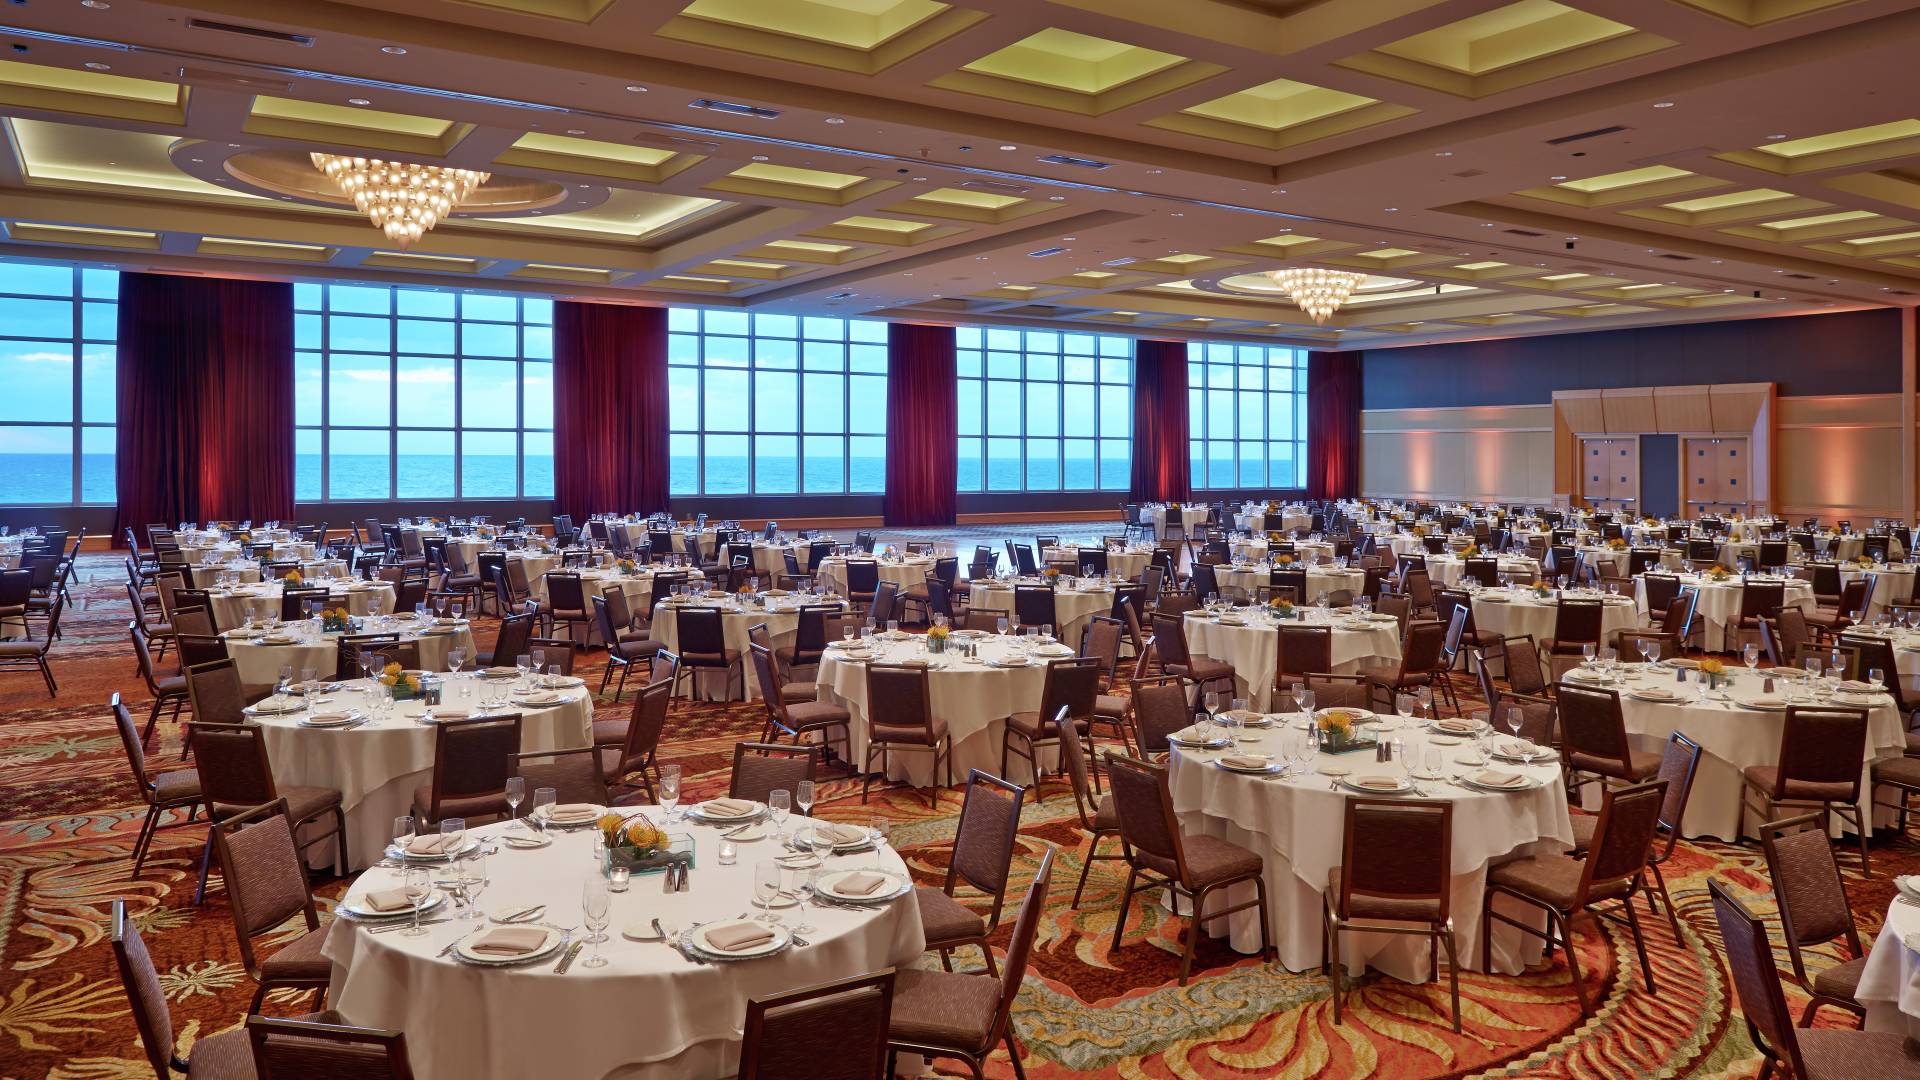 Ballroom, banquet tables-transition